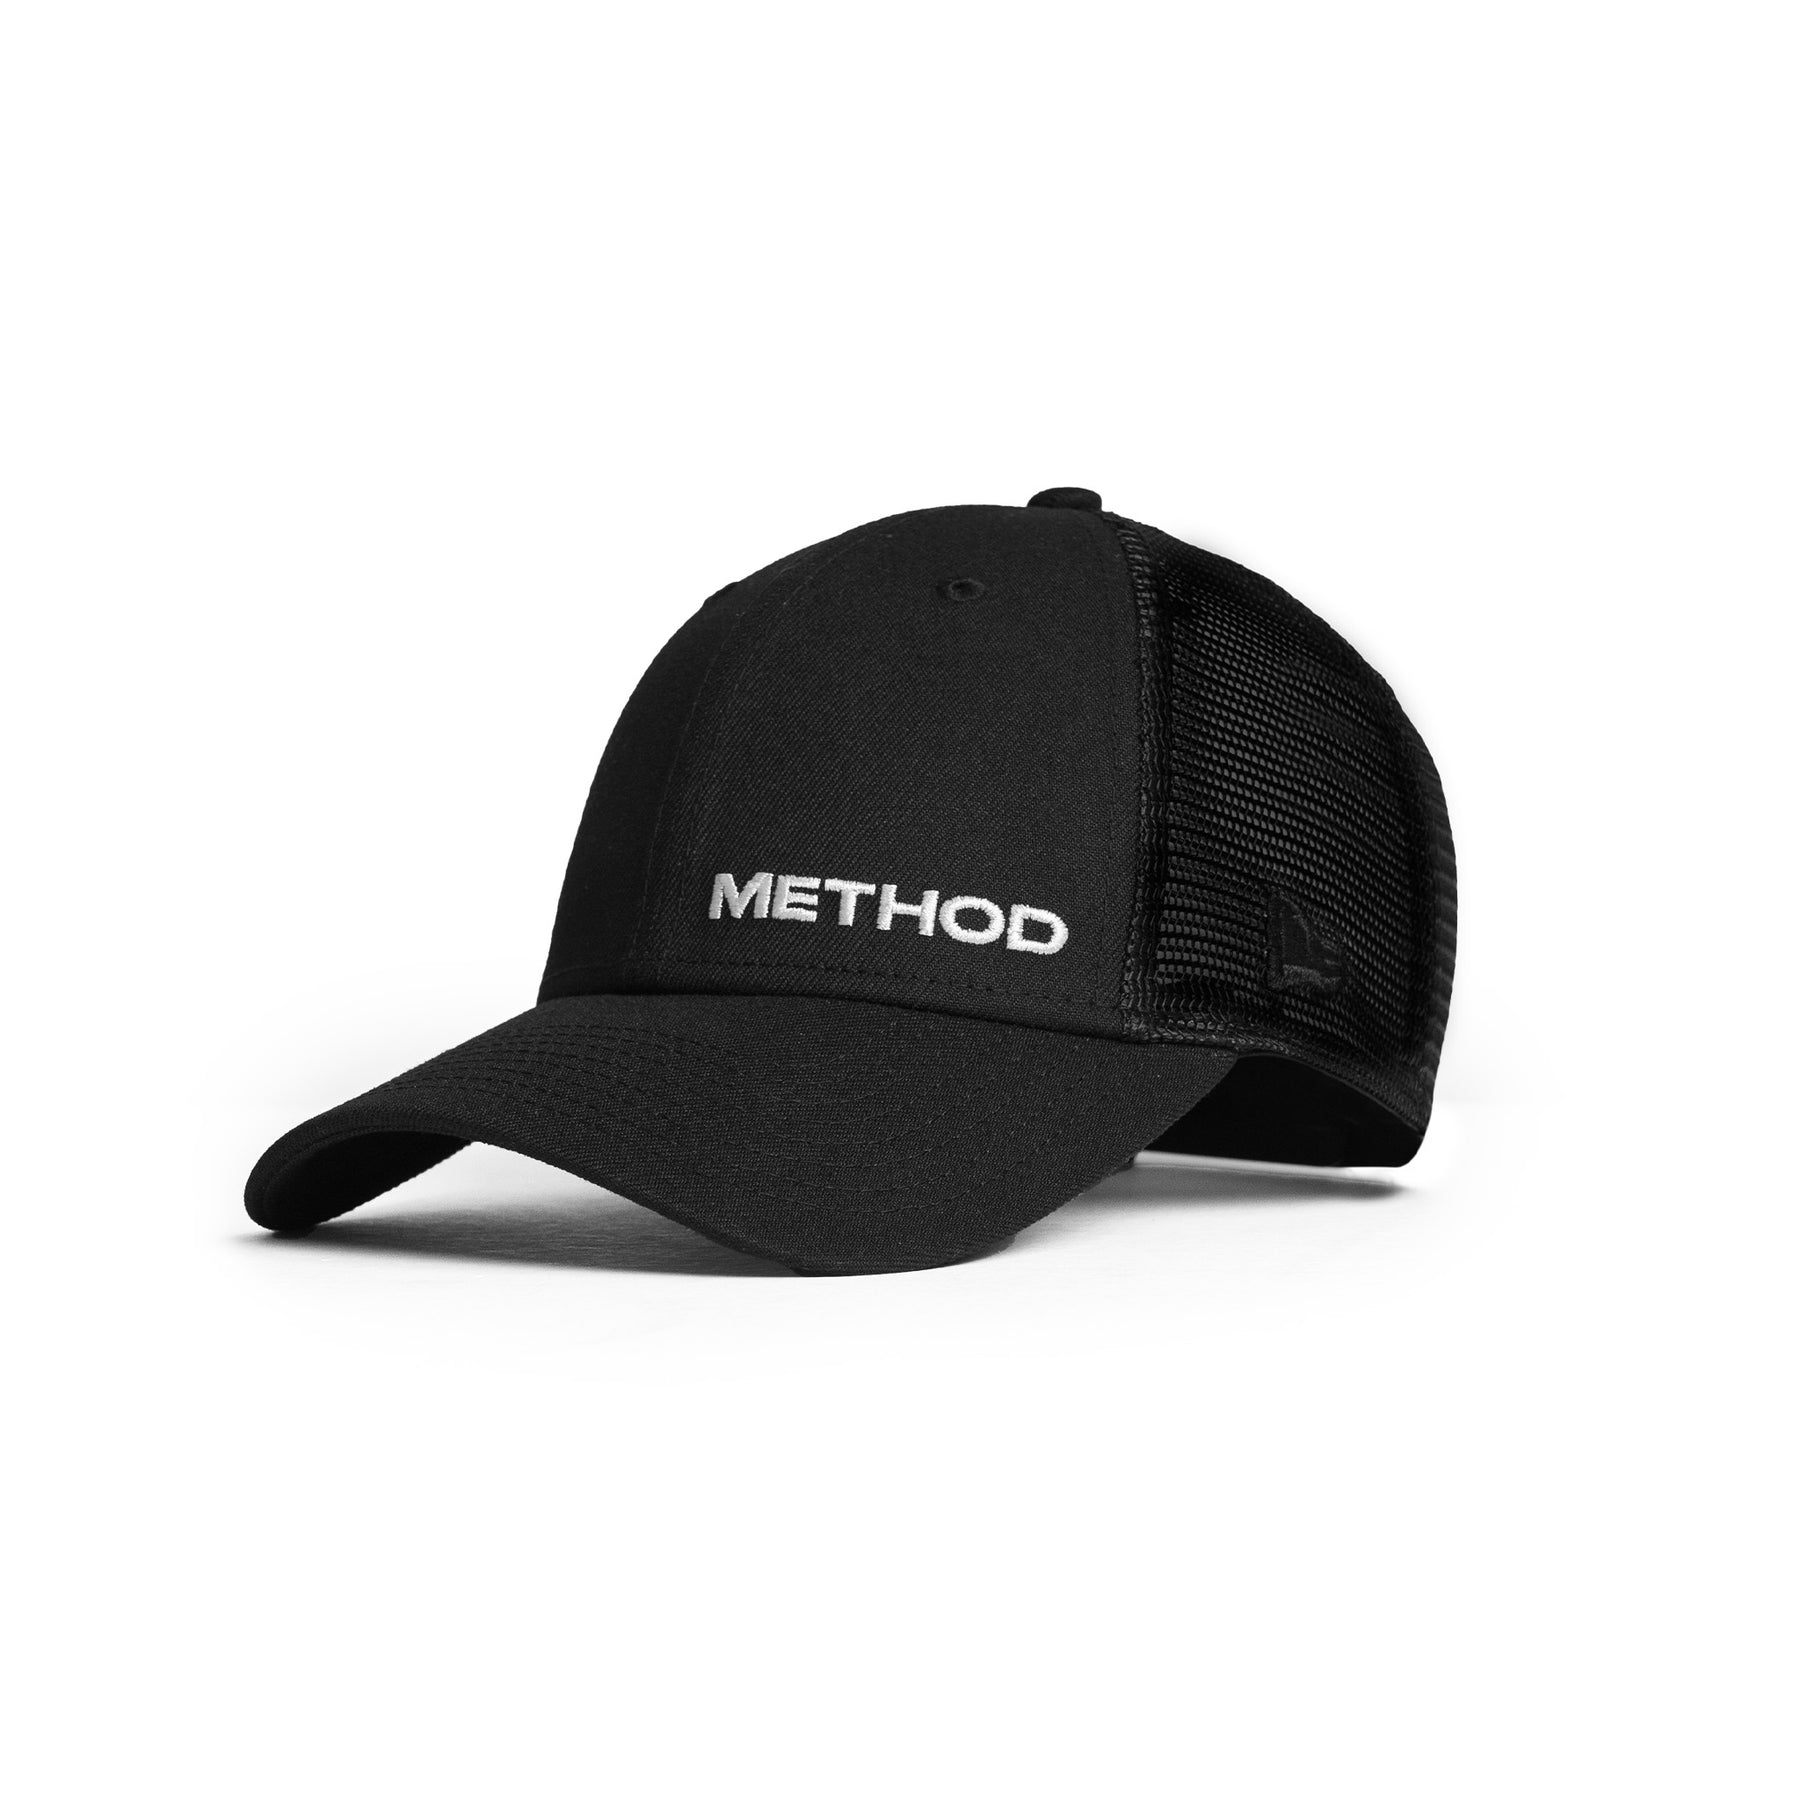 Method 940 Trucker Cap - Black/White - Flawless